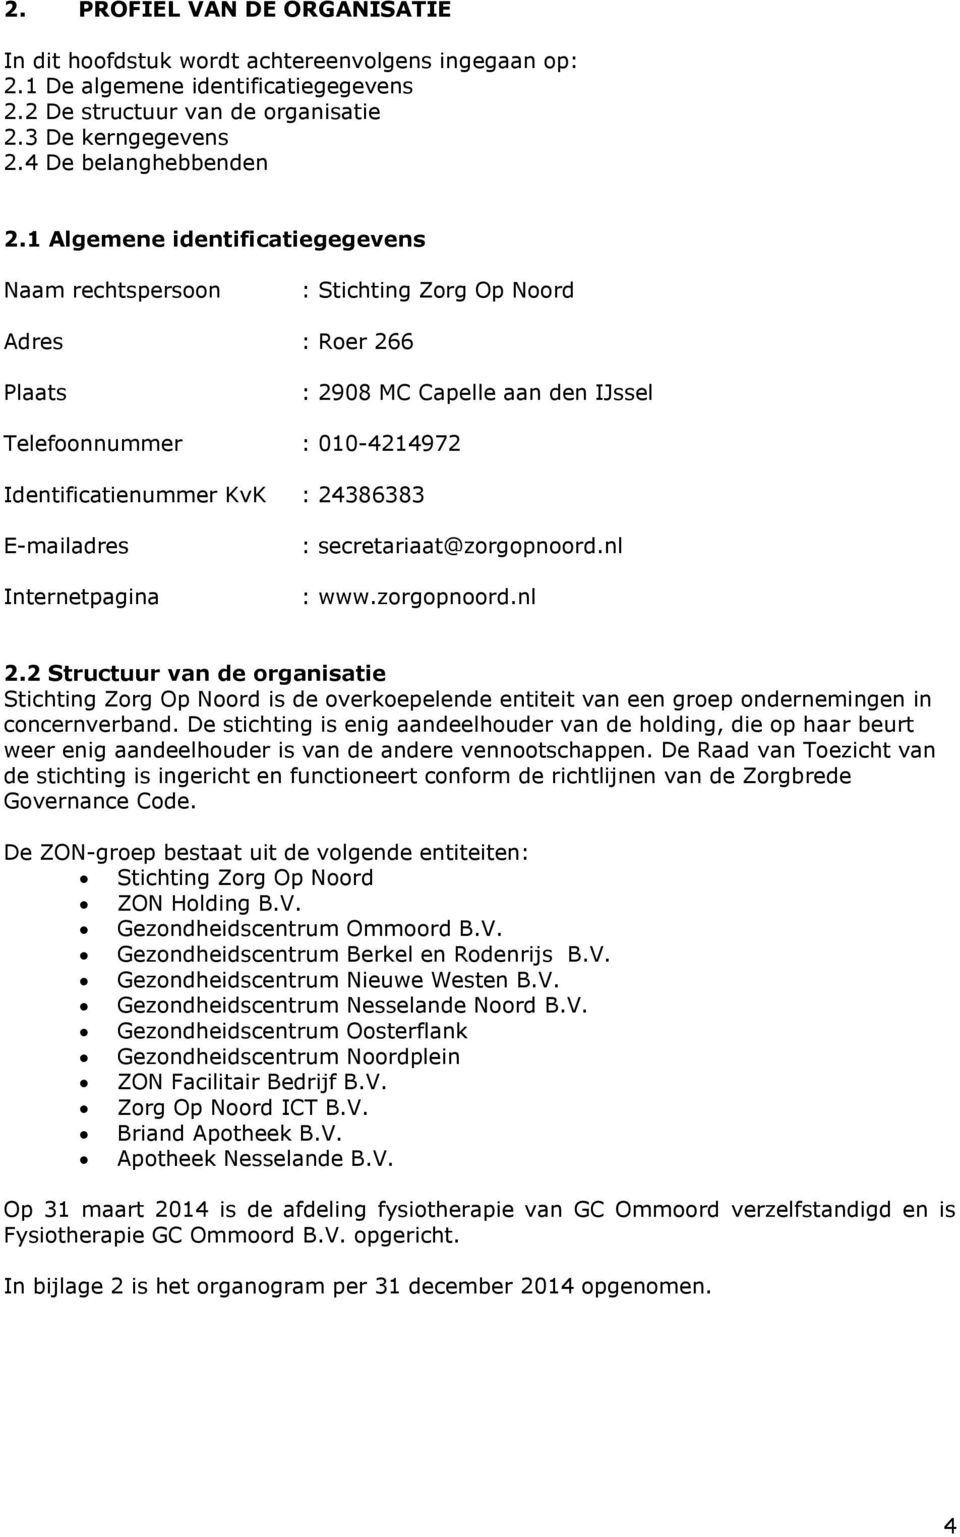 1 Algemene identificatiegegevens Naam rechtspersoon : Stichting Zorg Op Noord Adres : Roer 266 Plaats : 2908 MC Capelle aan den IJssel Telefoonnummer : 010-4214972 Identificatienummer KvK : 24386383